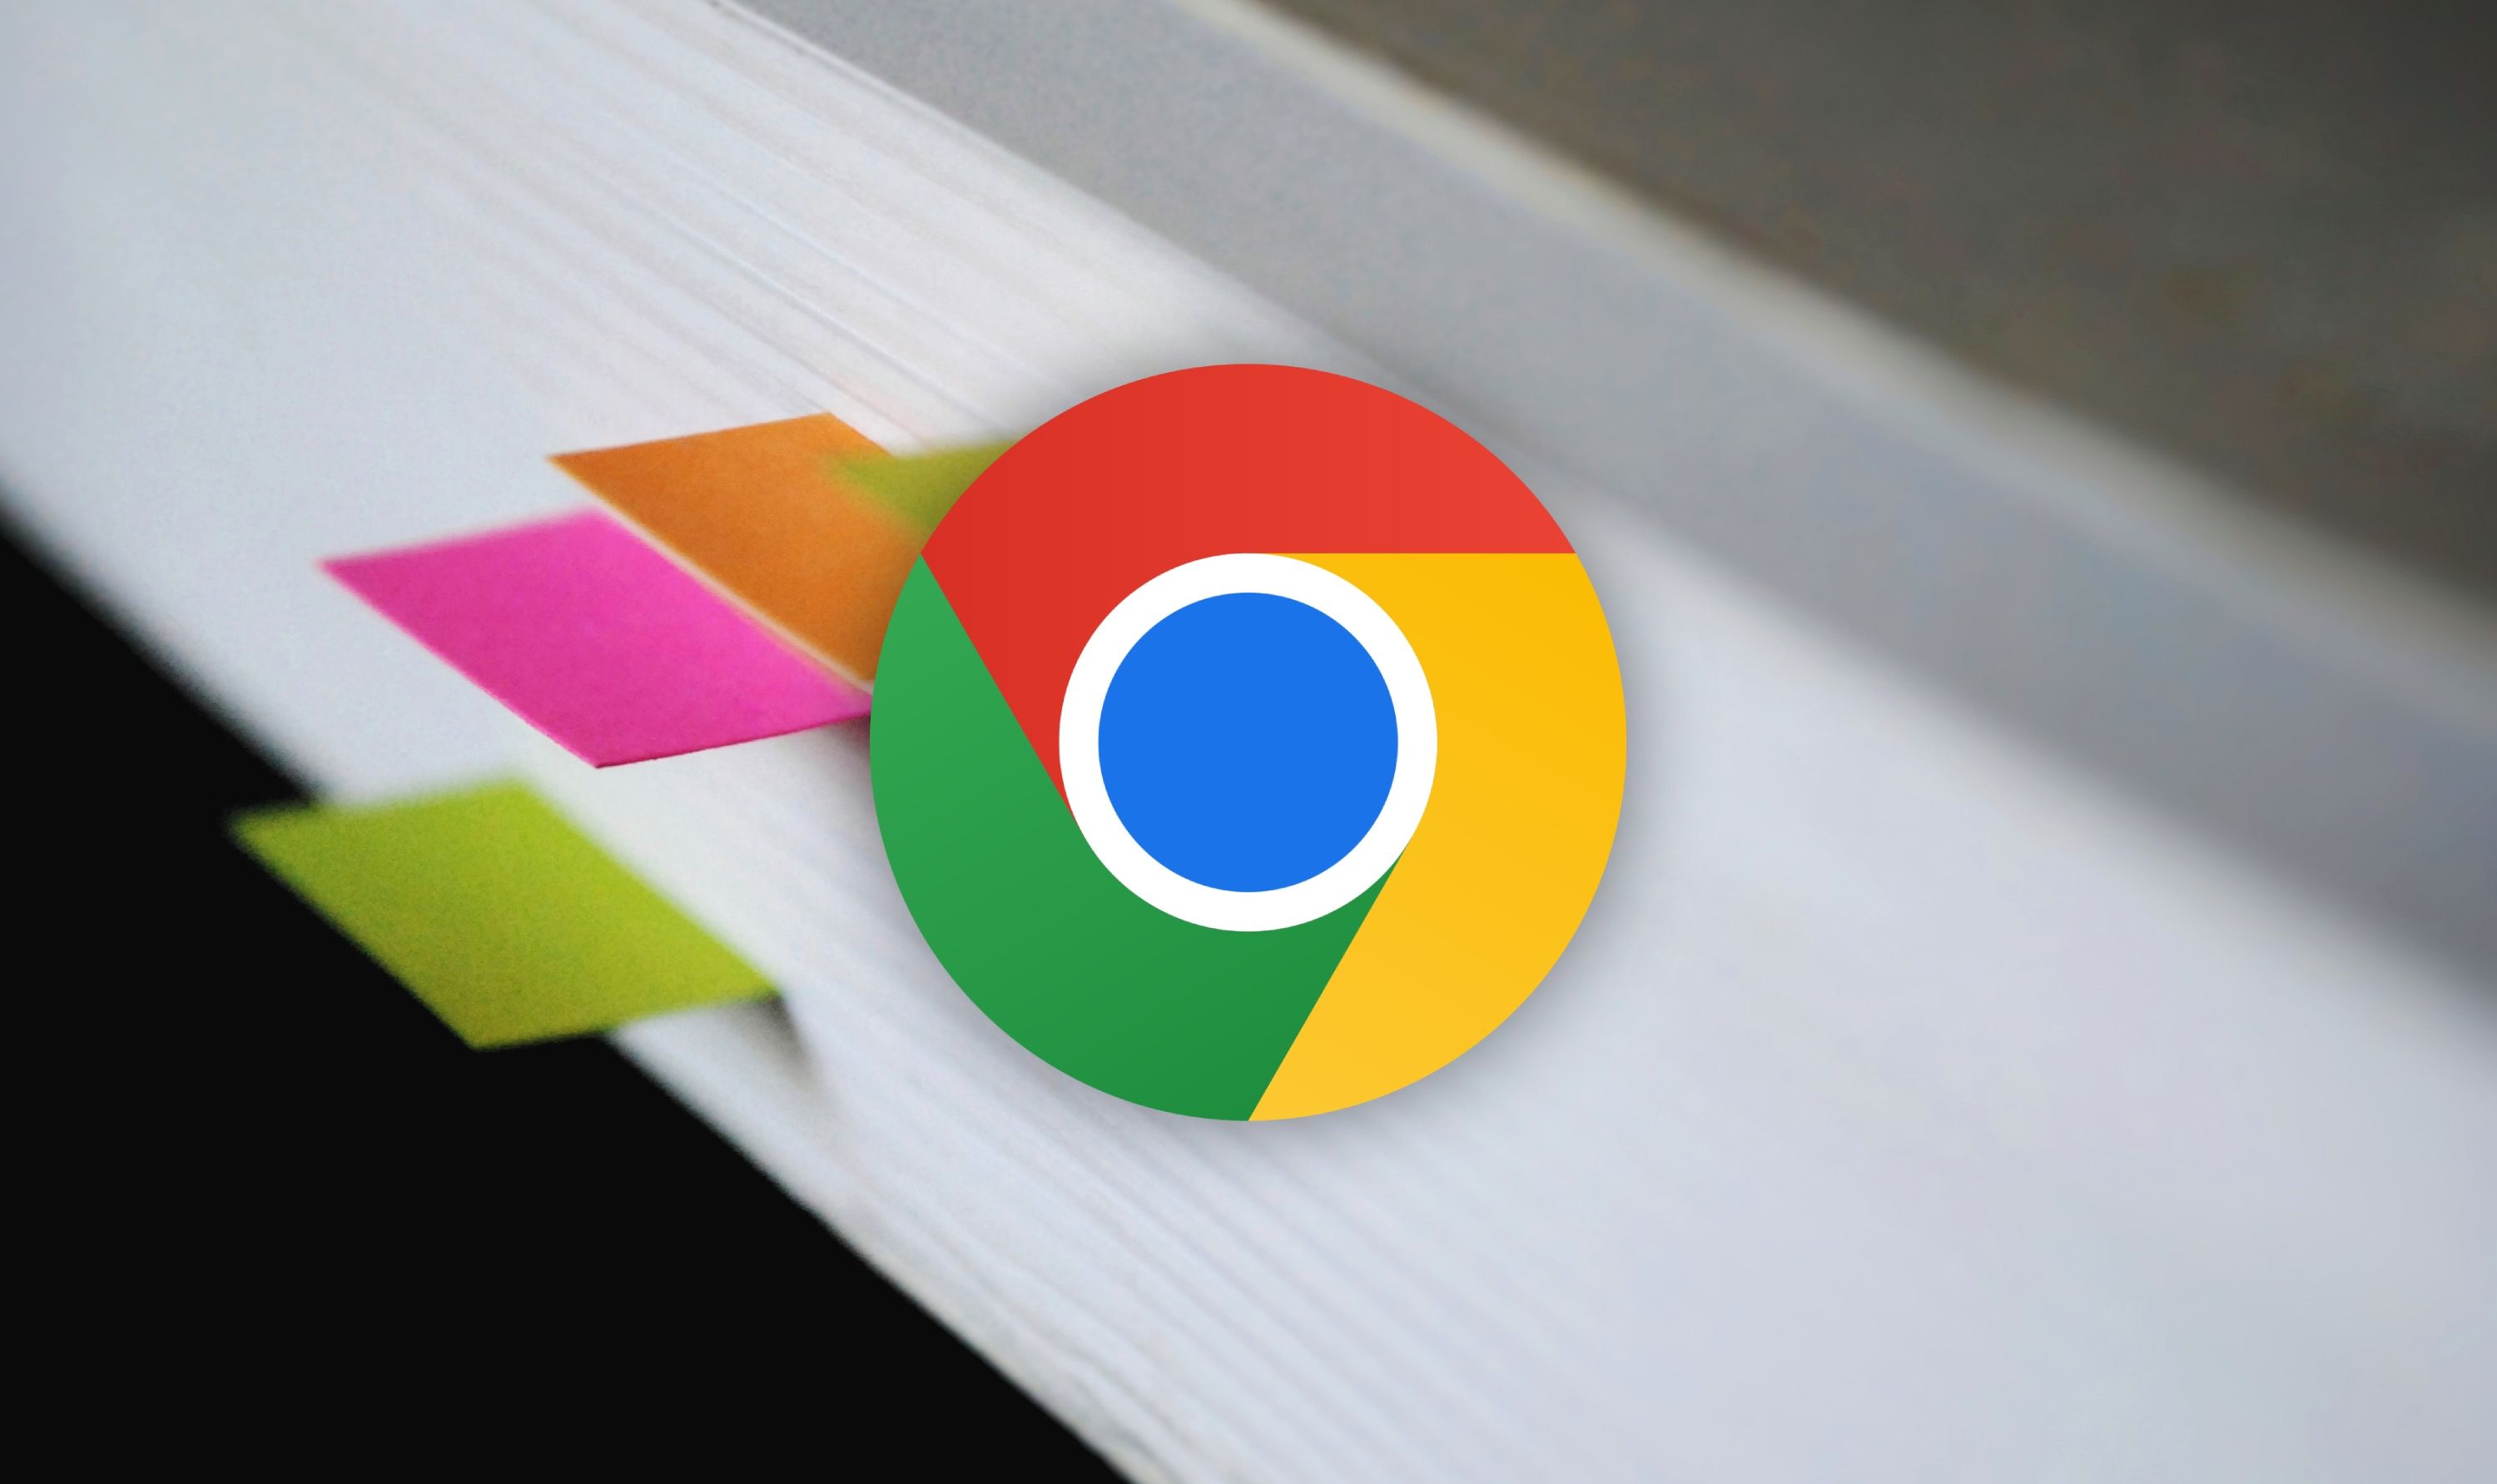 Logotipo do Google Chrome em um livro com marcadores anexados às páginas.